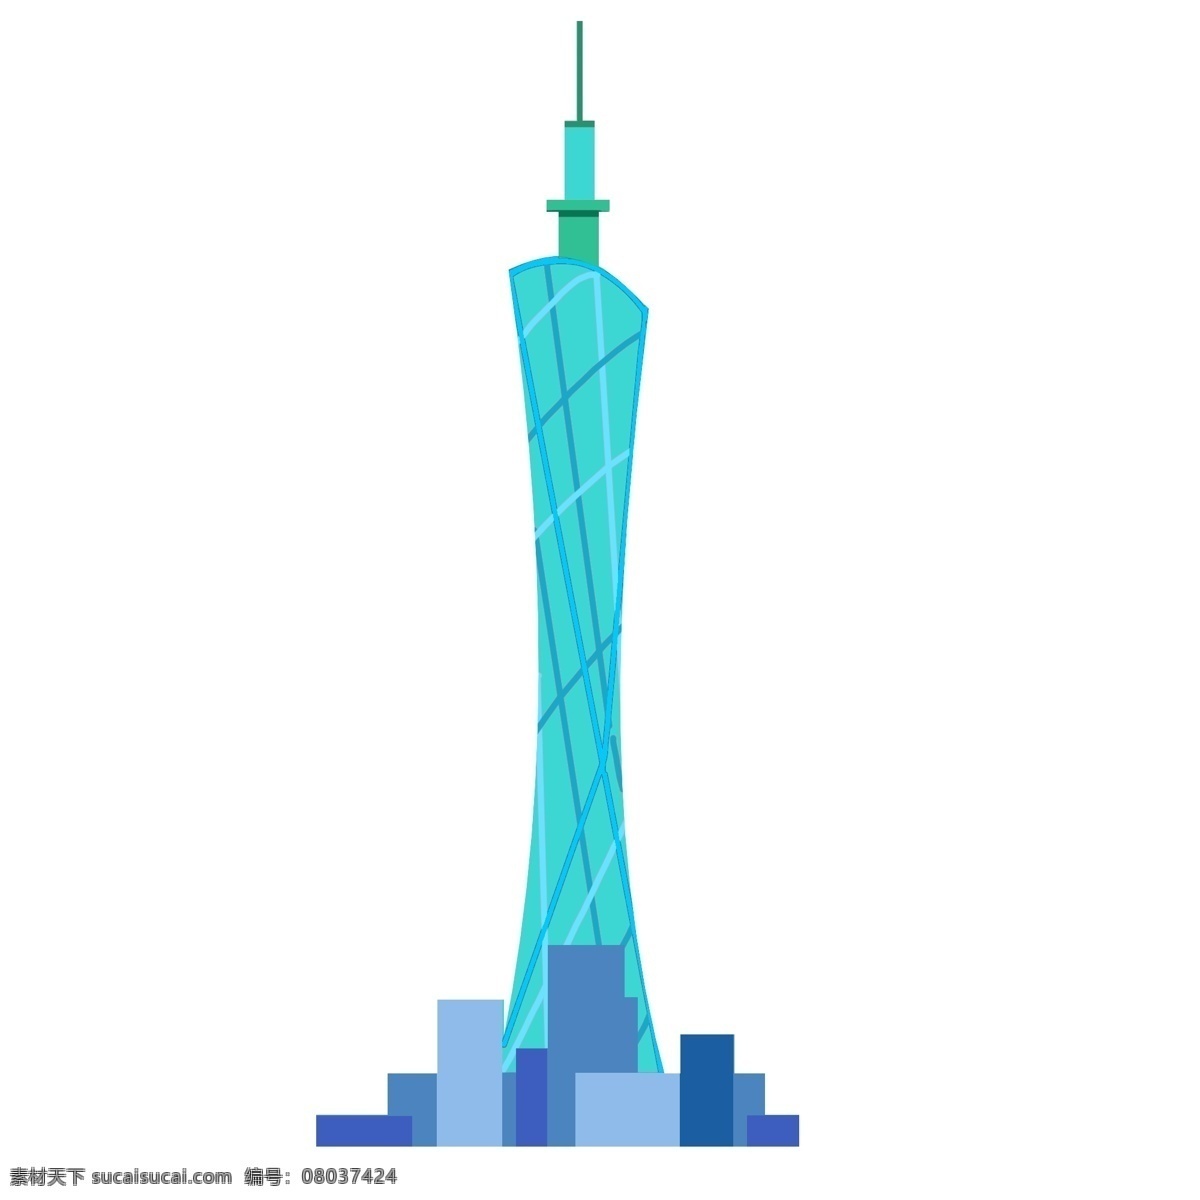 漂亮 蓝色 广州 塔 漂亮的塔 蓝色广州塔 广州塔 广州塔插图 地标性建筑 高塔建筑物 蓝塔